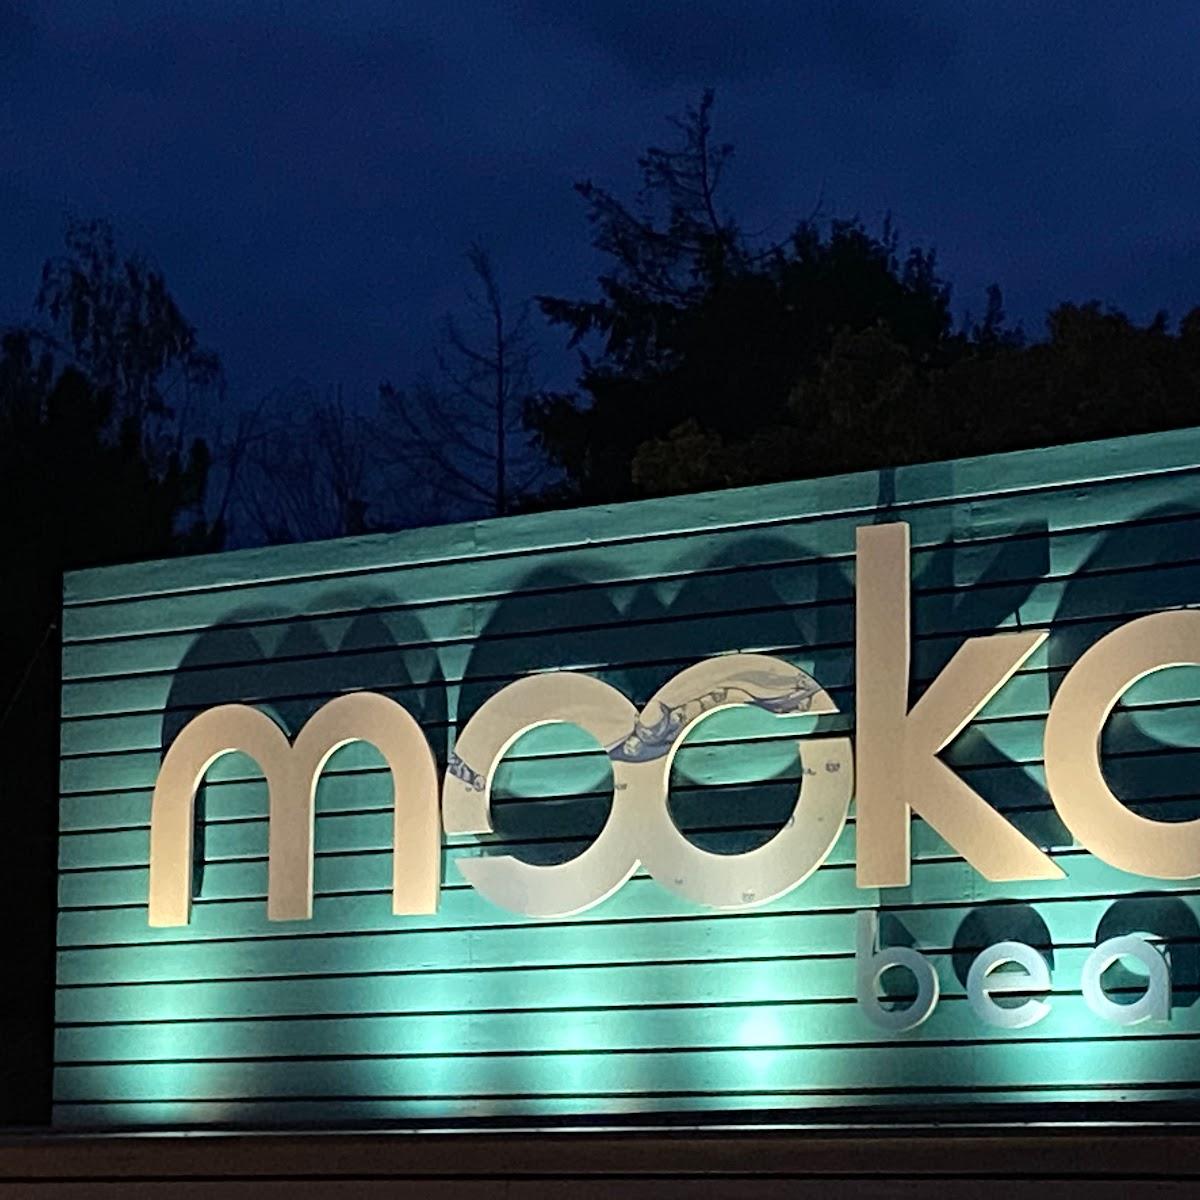 Restaurant "Mookai Beach" in Rodenbach